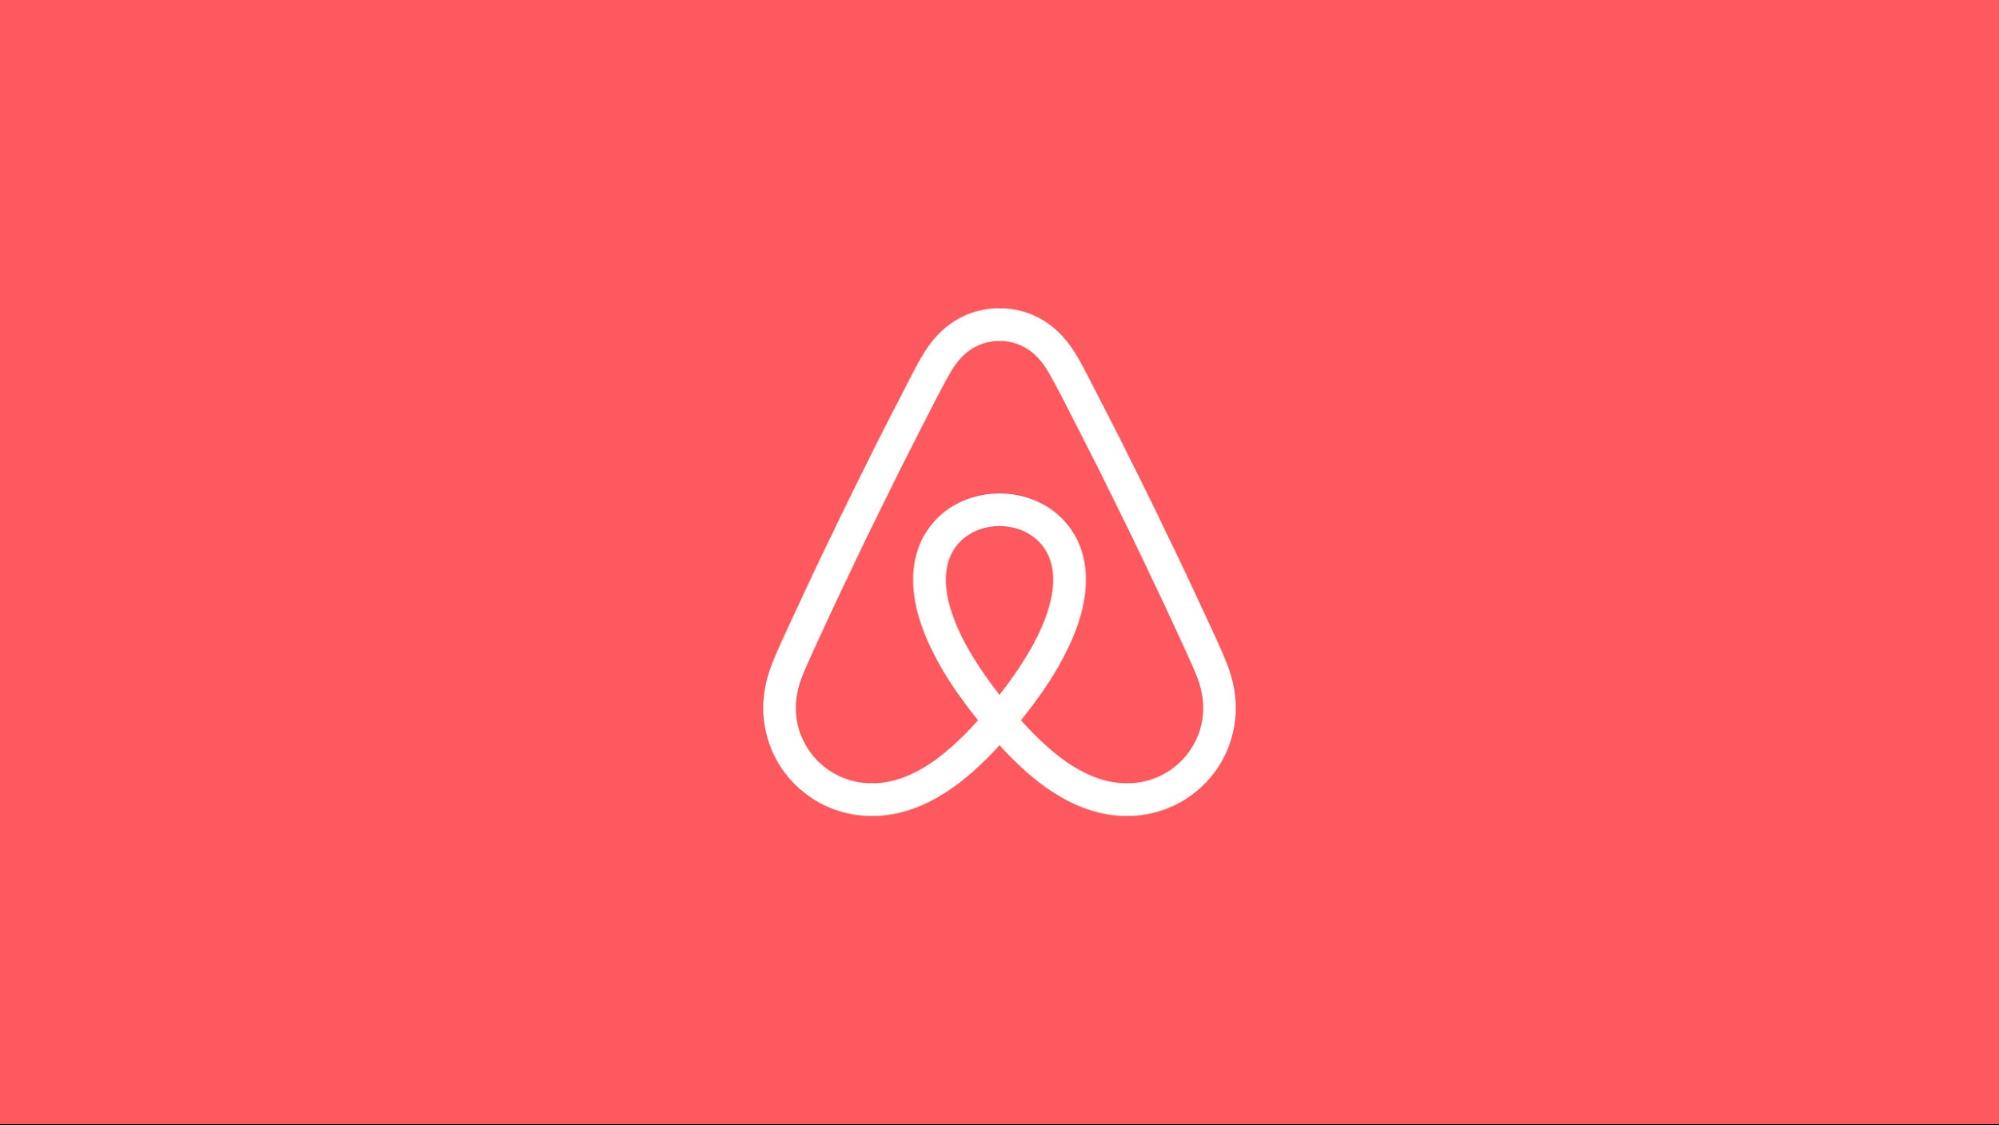 Cách đặt phòng trên Airbnb